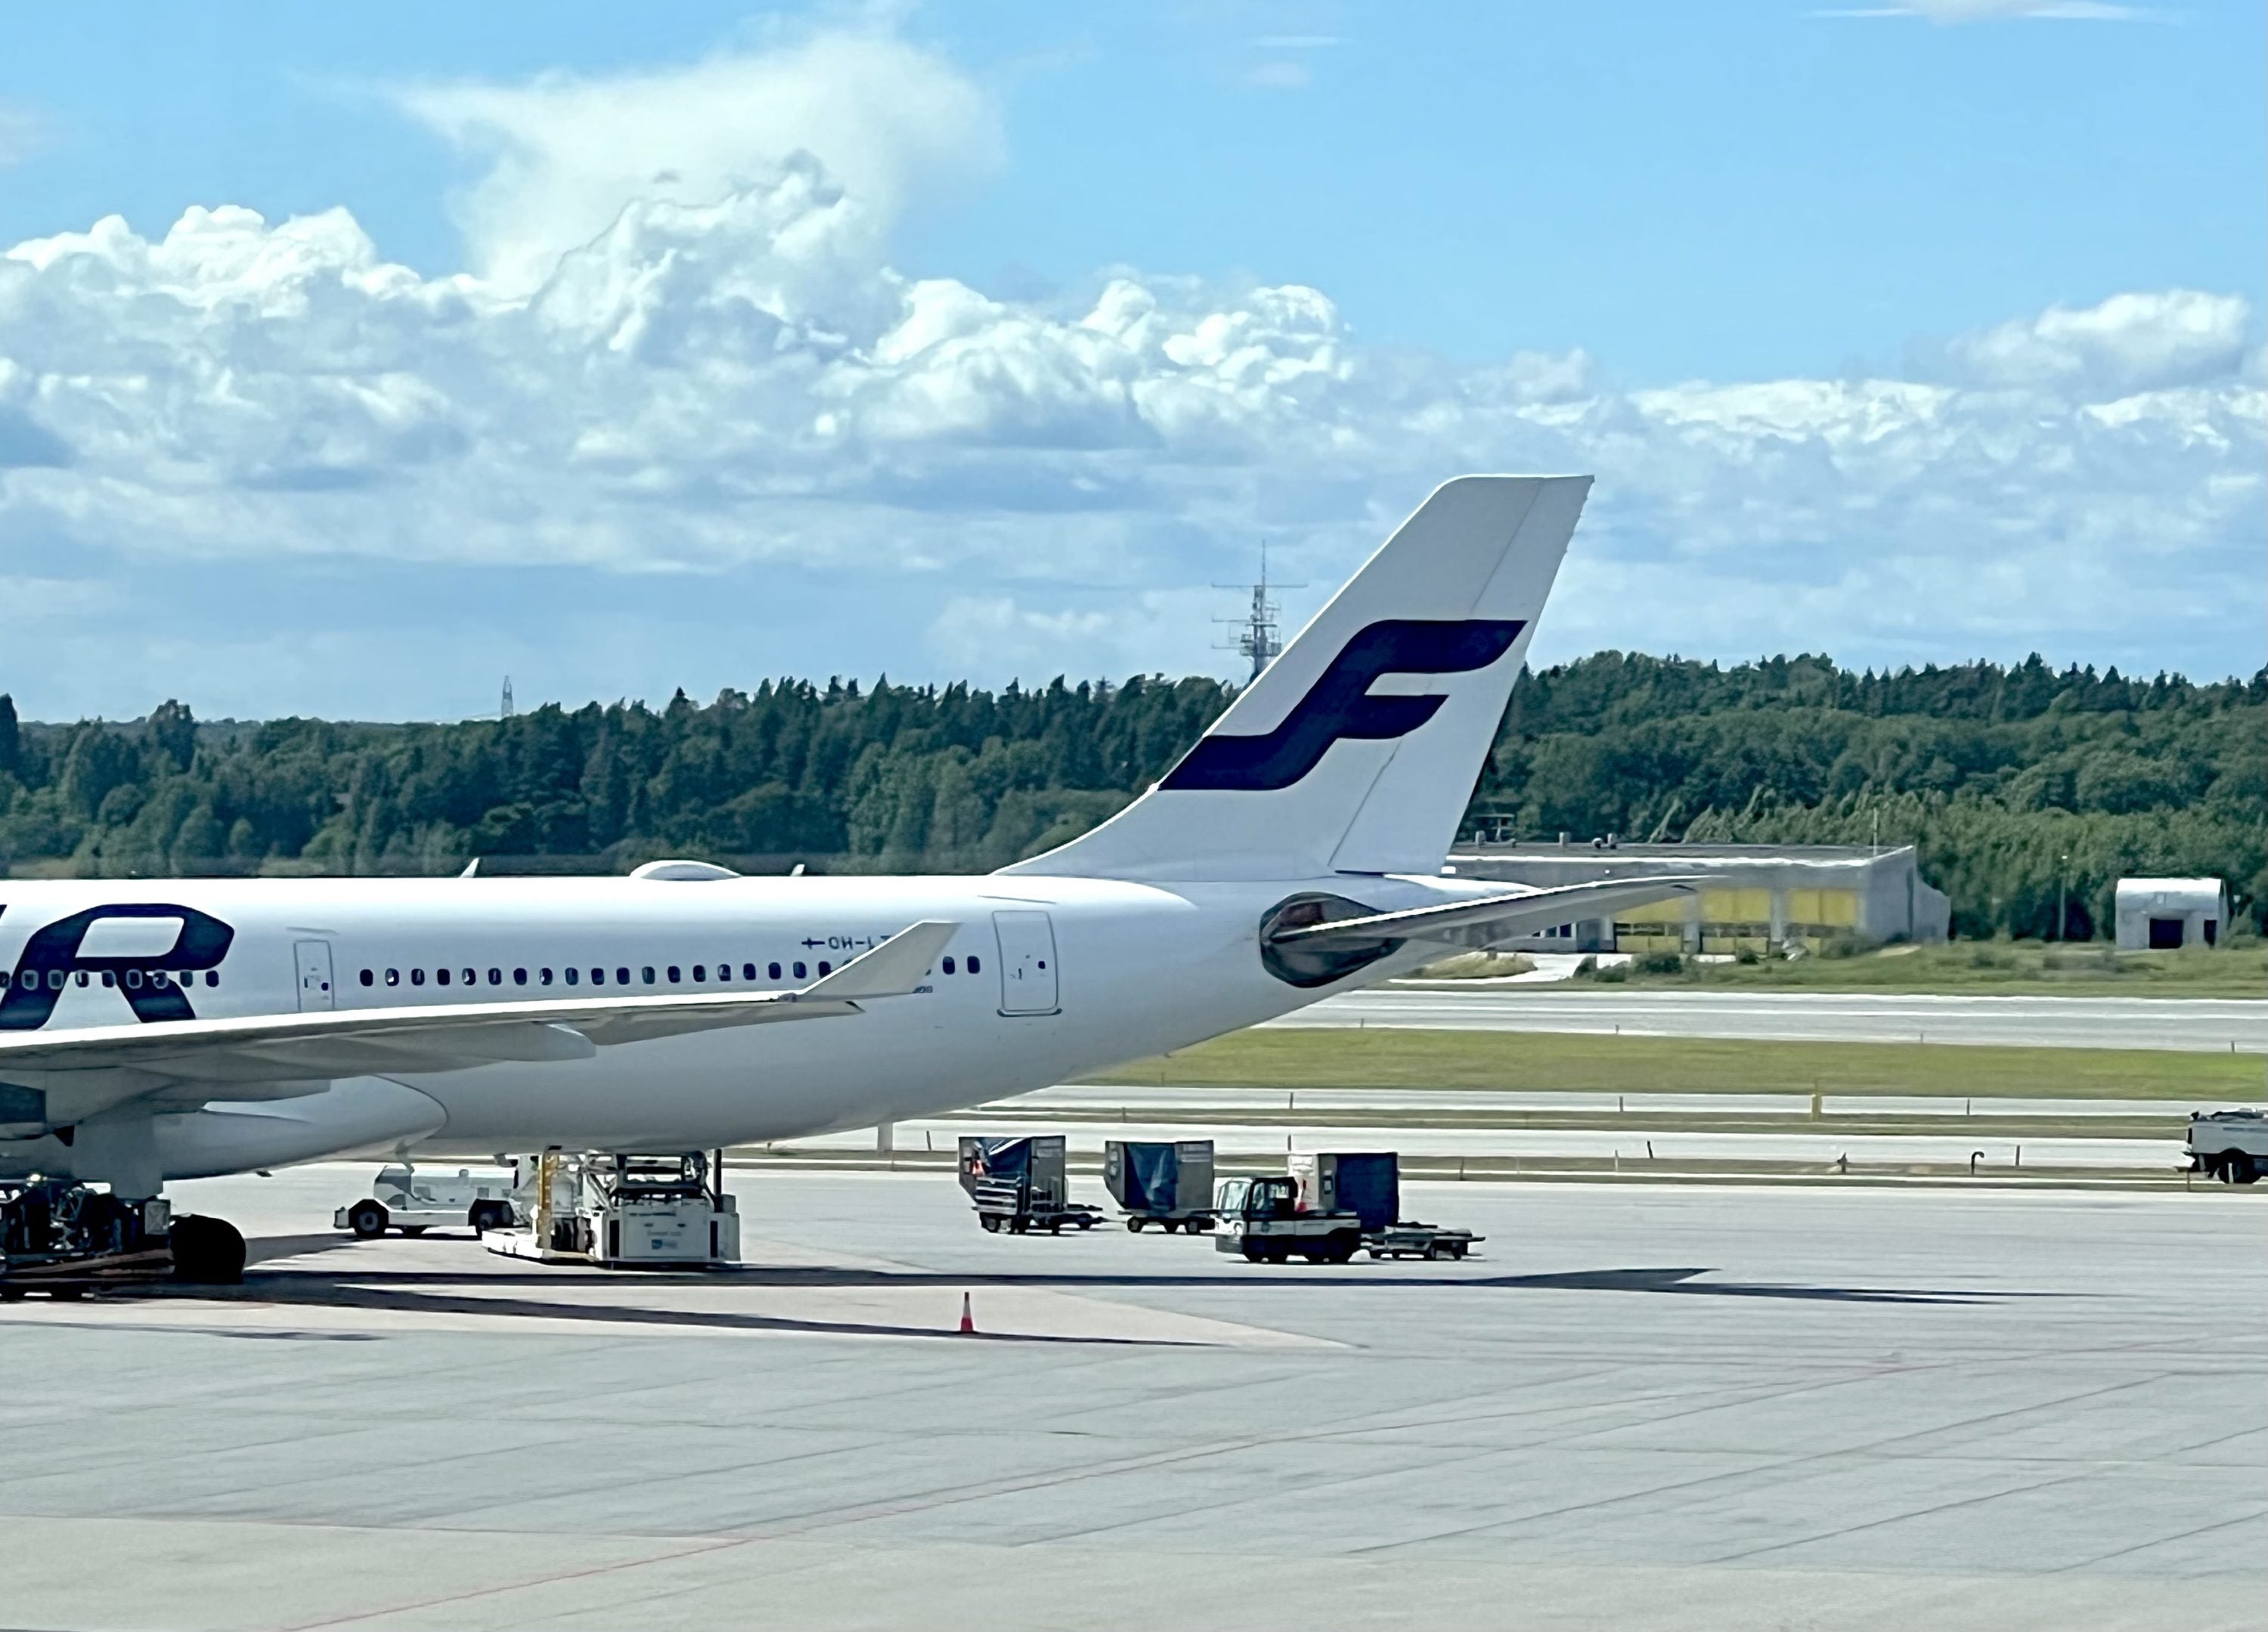 Finnair A330 at Stockholm Arlanda Airport